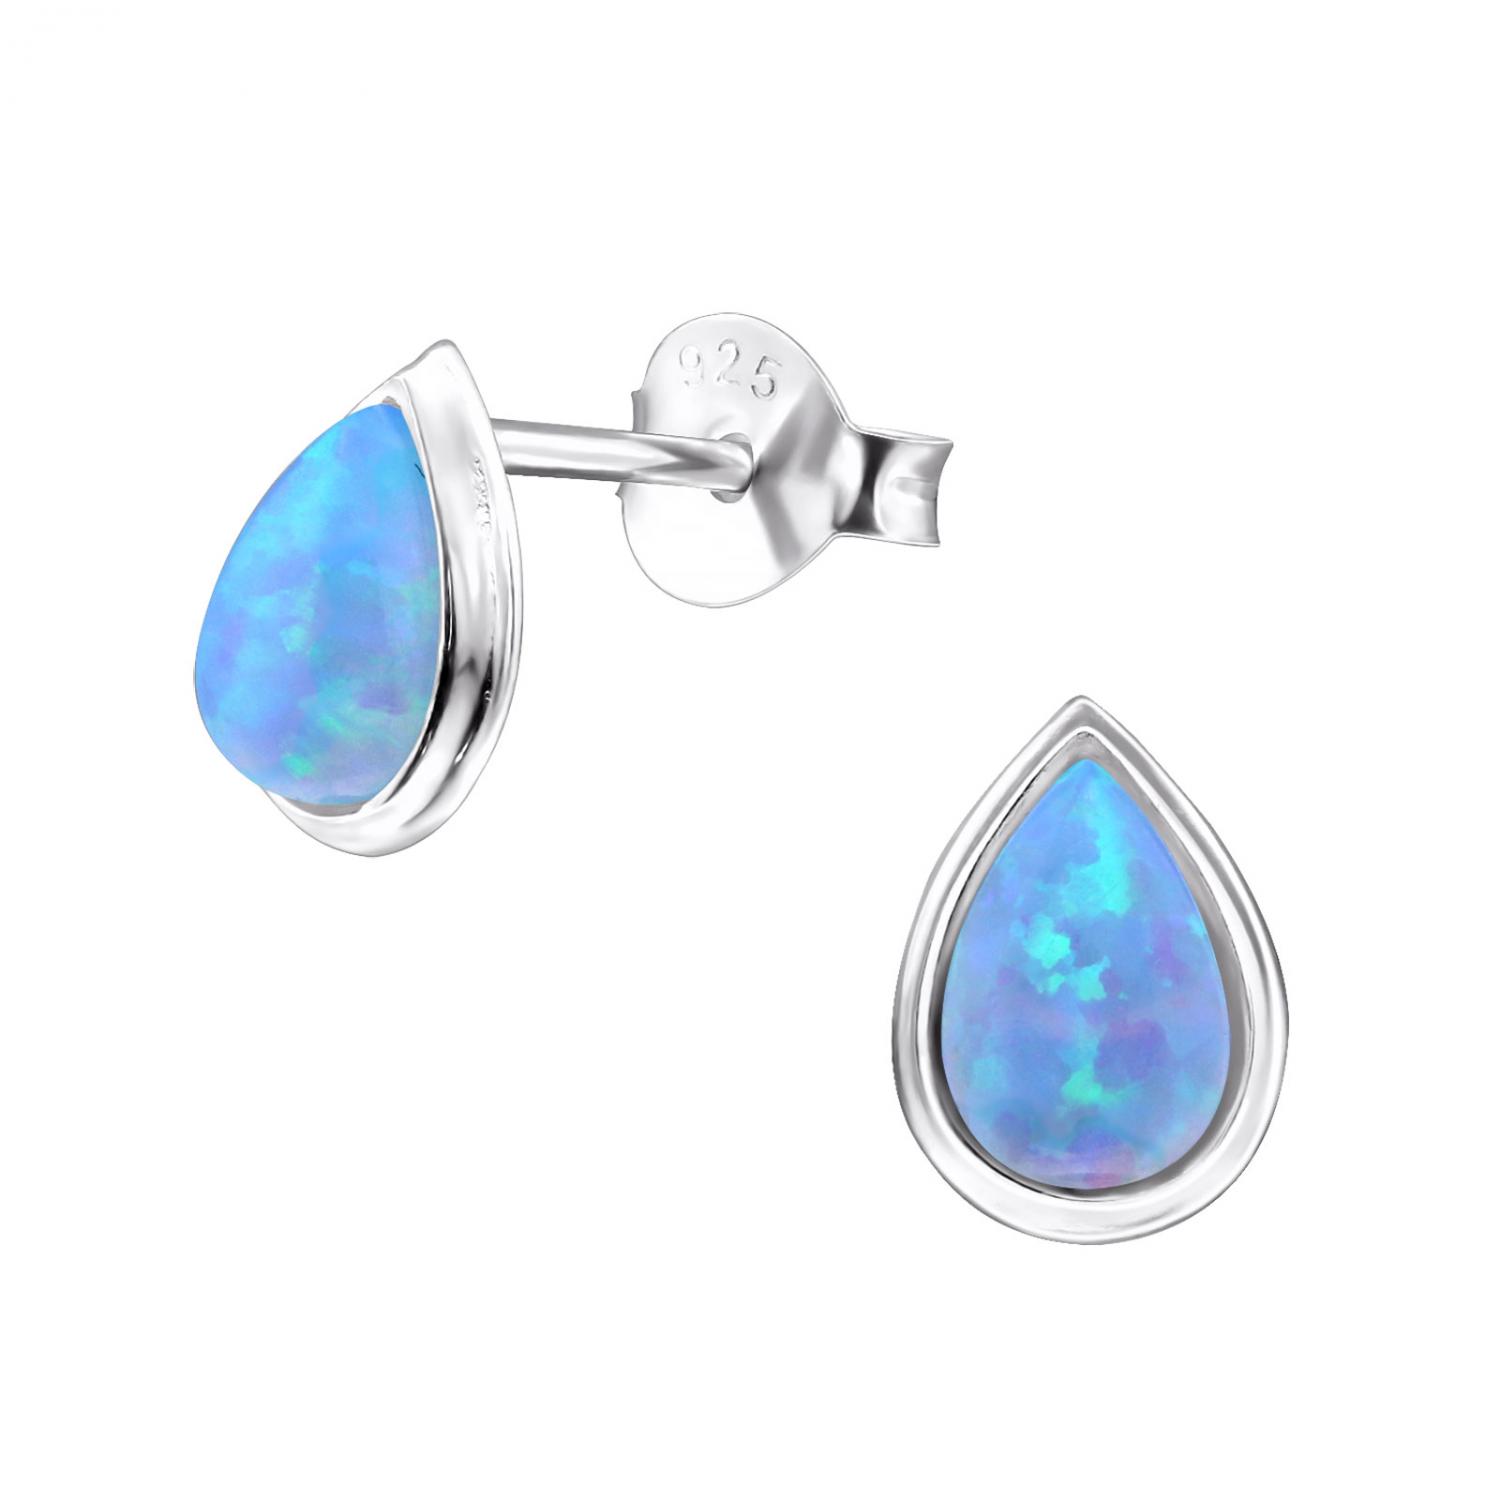 Teardrop blå opalit - Studs - Örhängen i äkta silver